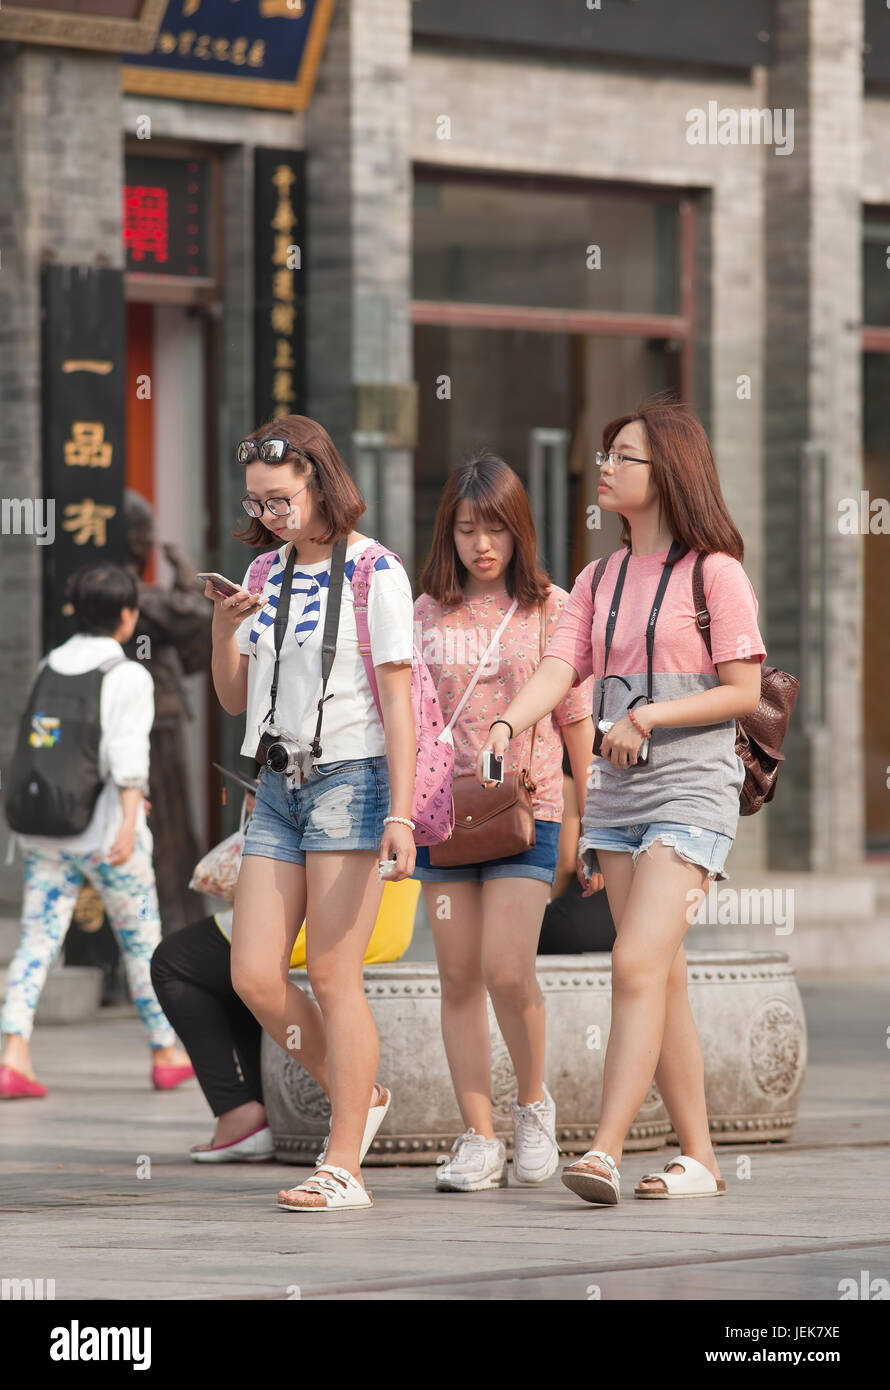 PECHINO-9 GIUGNO 2015. Giovani ragazze nella zona commerciale. Secondo il censimento nazionale del 2010, la popolazione non sposata della Cina è enorme: 249 milioni di persone con più di 18 anni. Foto Stock